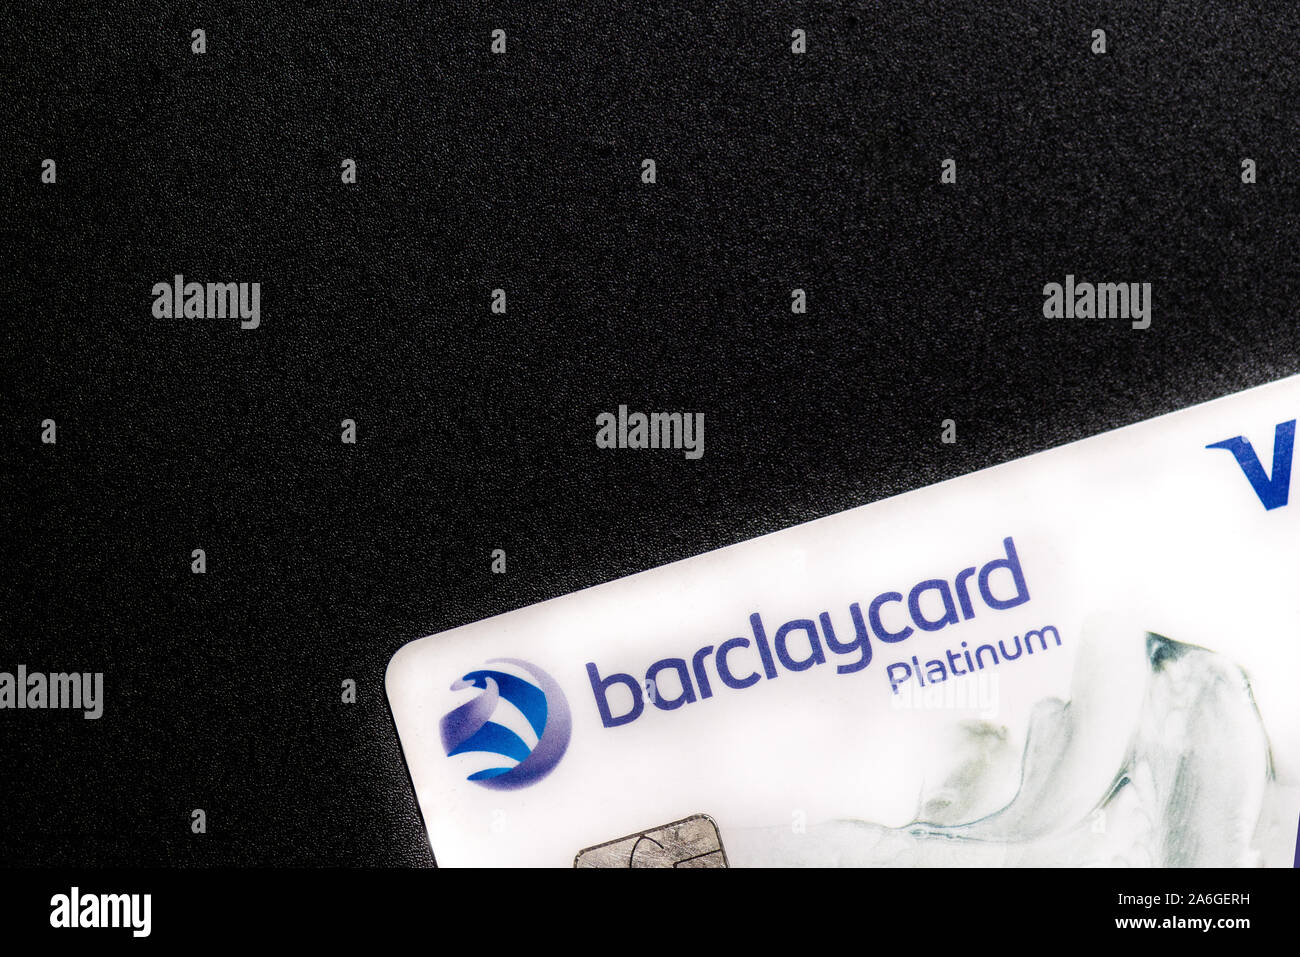 Weiß Barclaycard Platinum Kreditkarte auf schwarzem Hintergrund Stockfoto